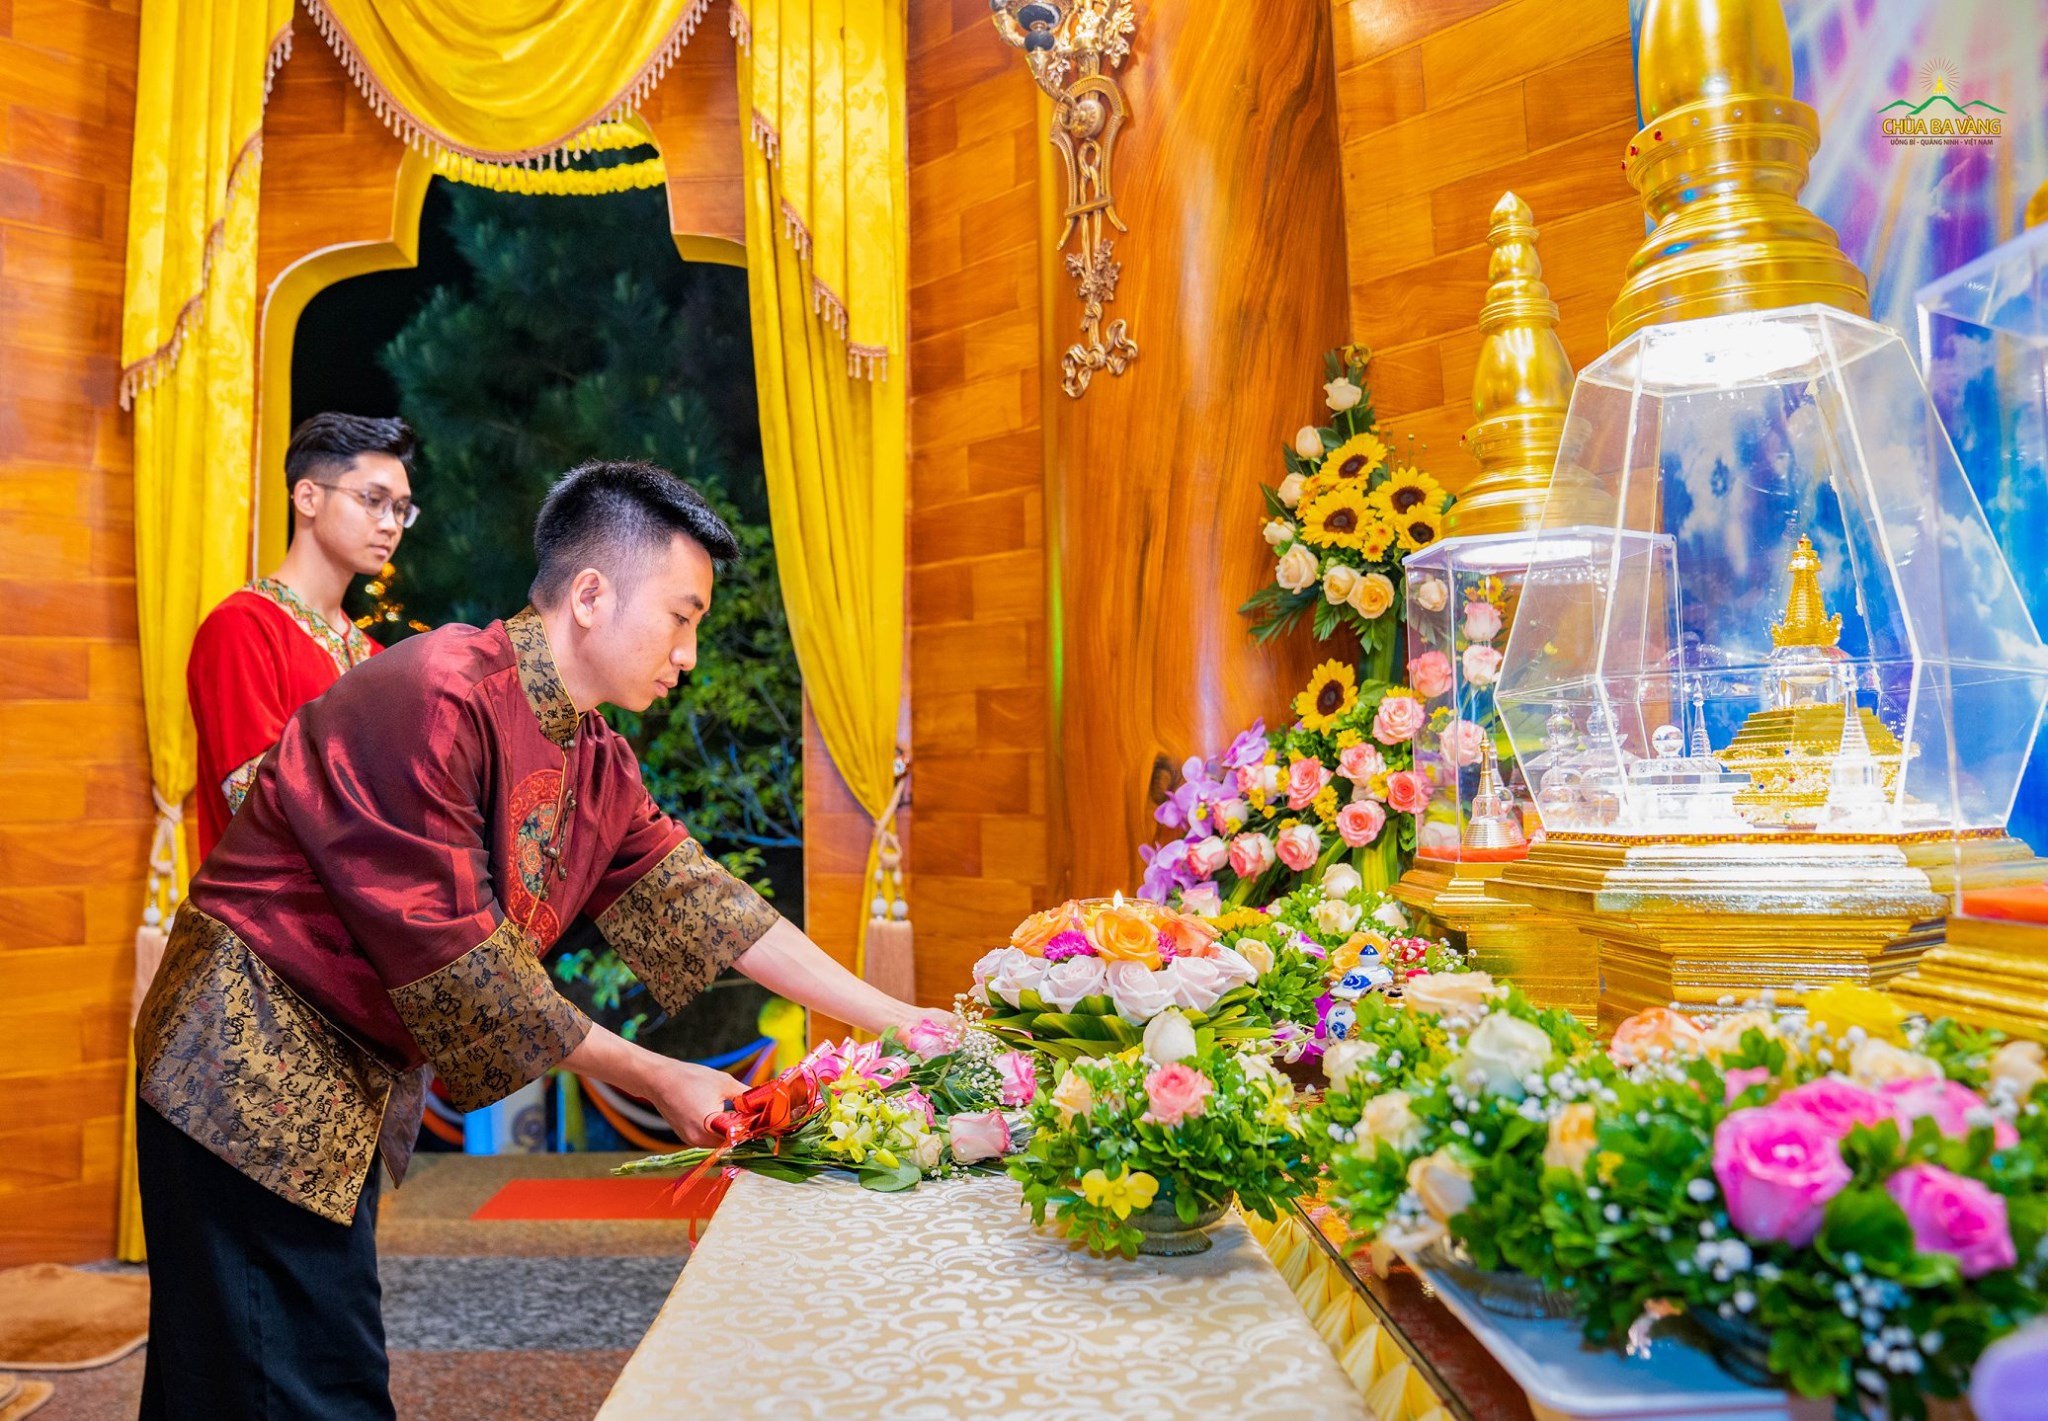   Các Phật tử đang tu học cấm túc tại chùa đại diện cho các Phật tử dâng đóa hoa tươi thắm dâng lên cúng dường Đức Phật  